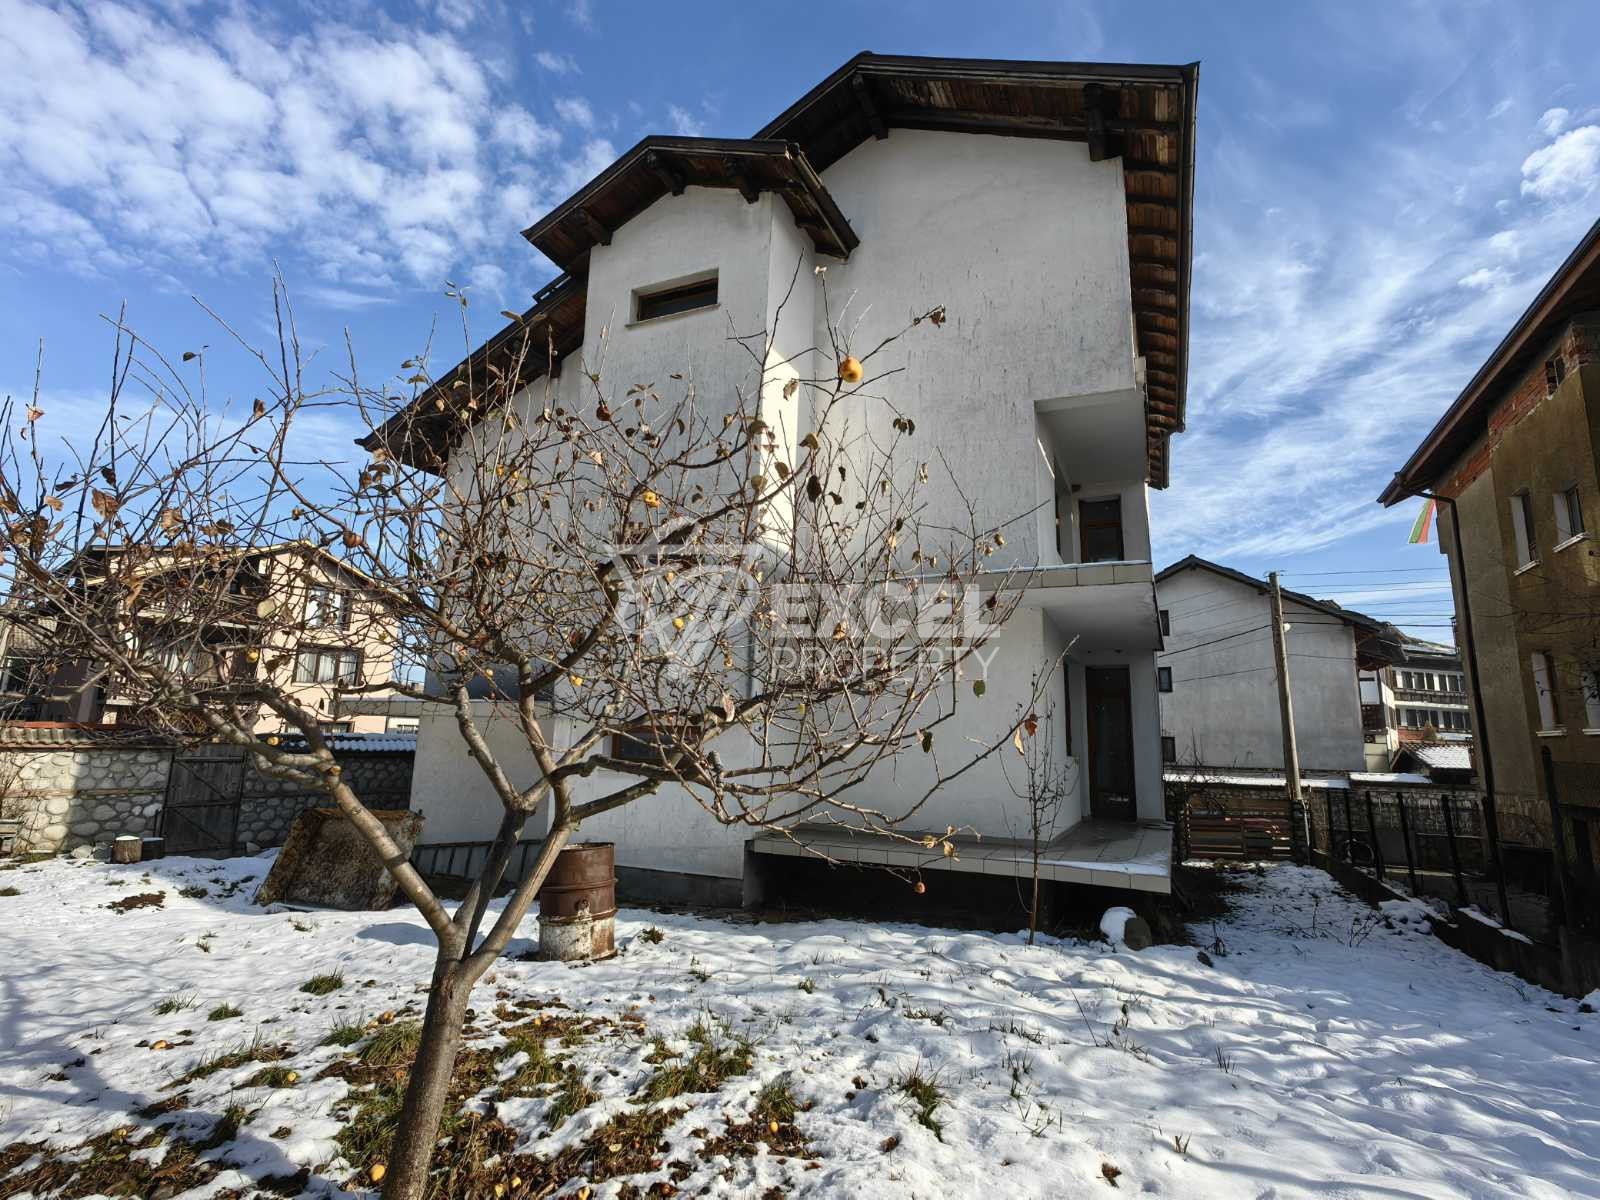 Масивна триетажна къща с 10 спални за продажба в Банско